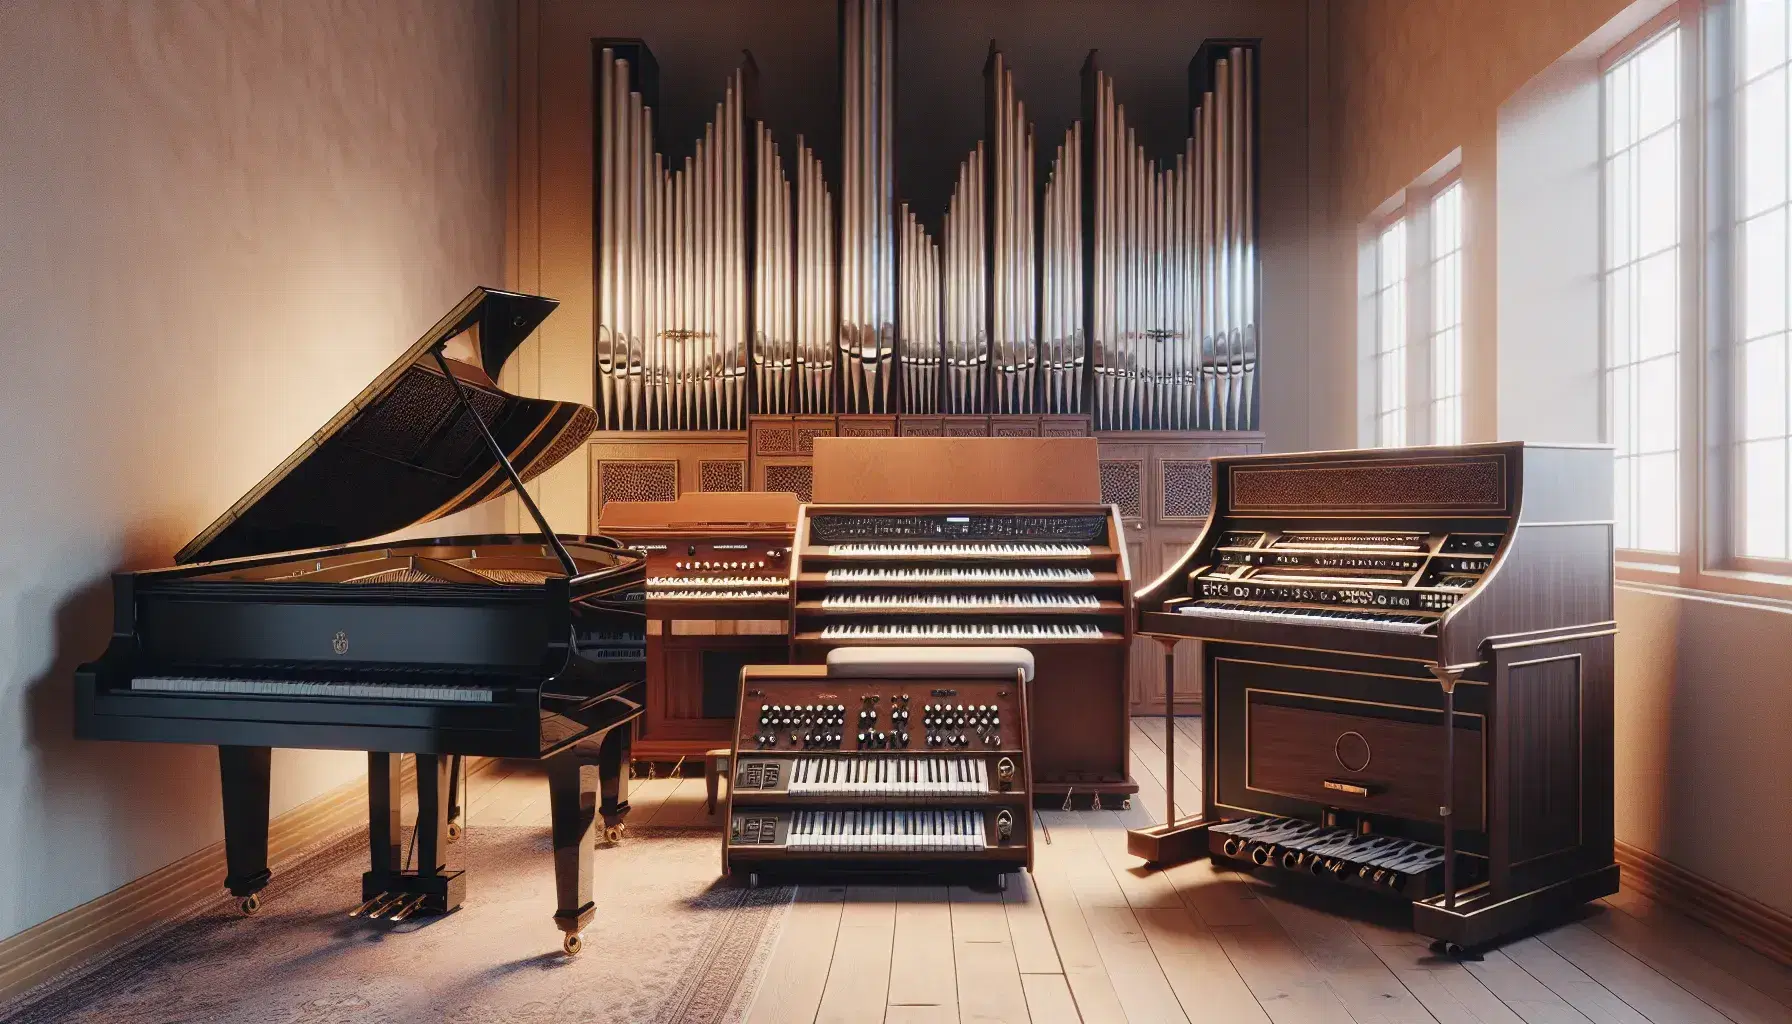 Strumenti a tastiera in fila con pianoforte a coda, clavicembalo, organo a canne e tastiera elettronica in una sala illuminata.